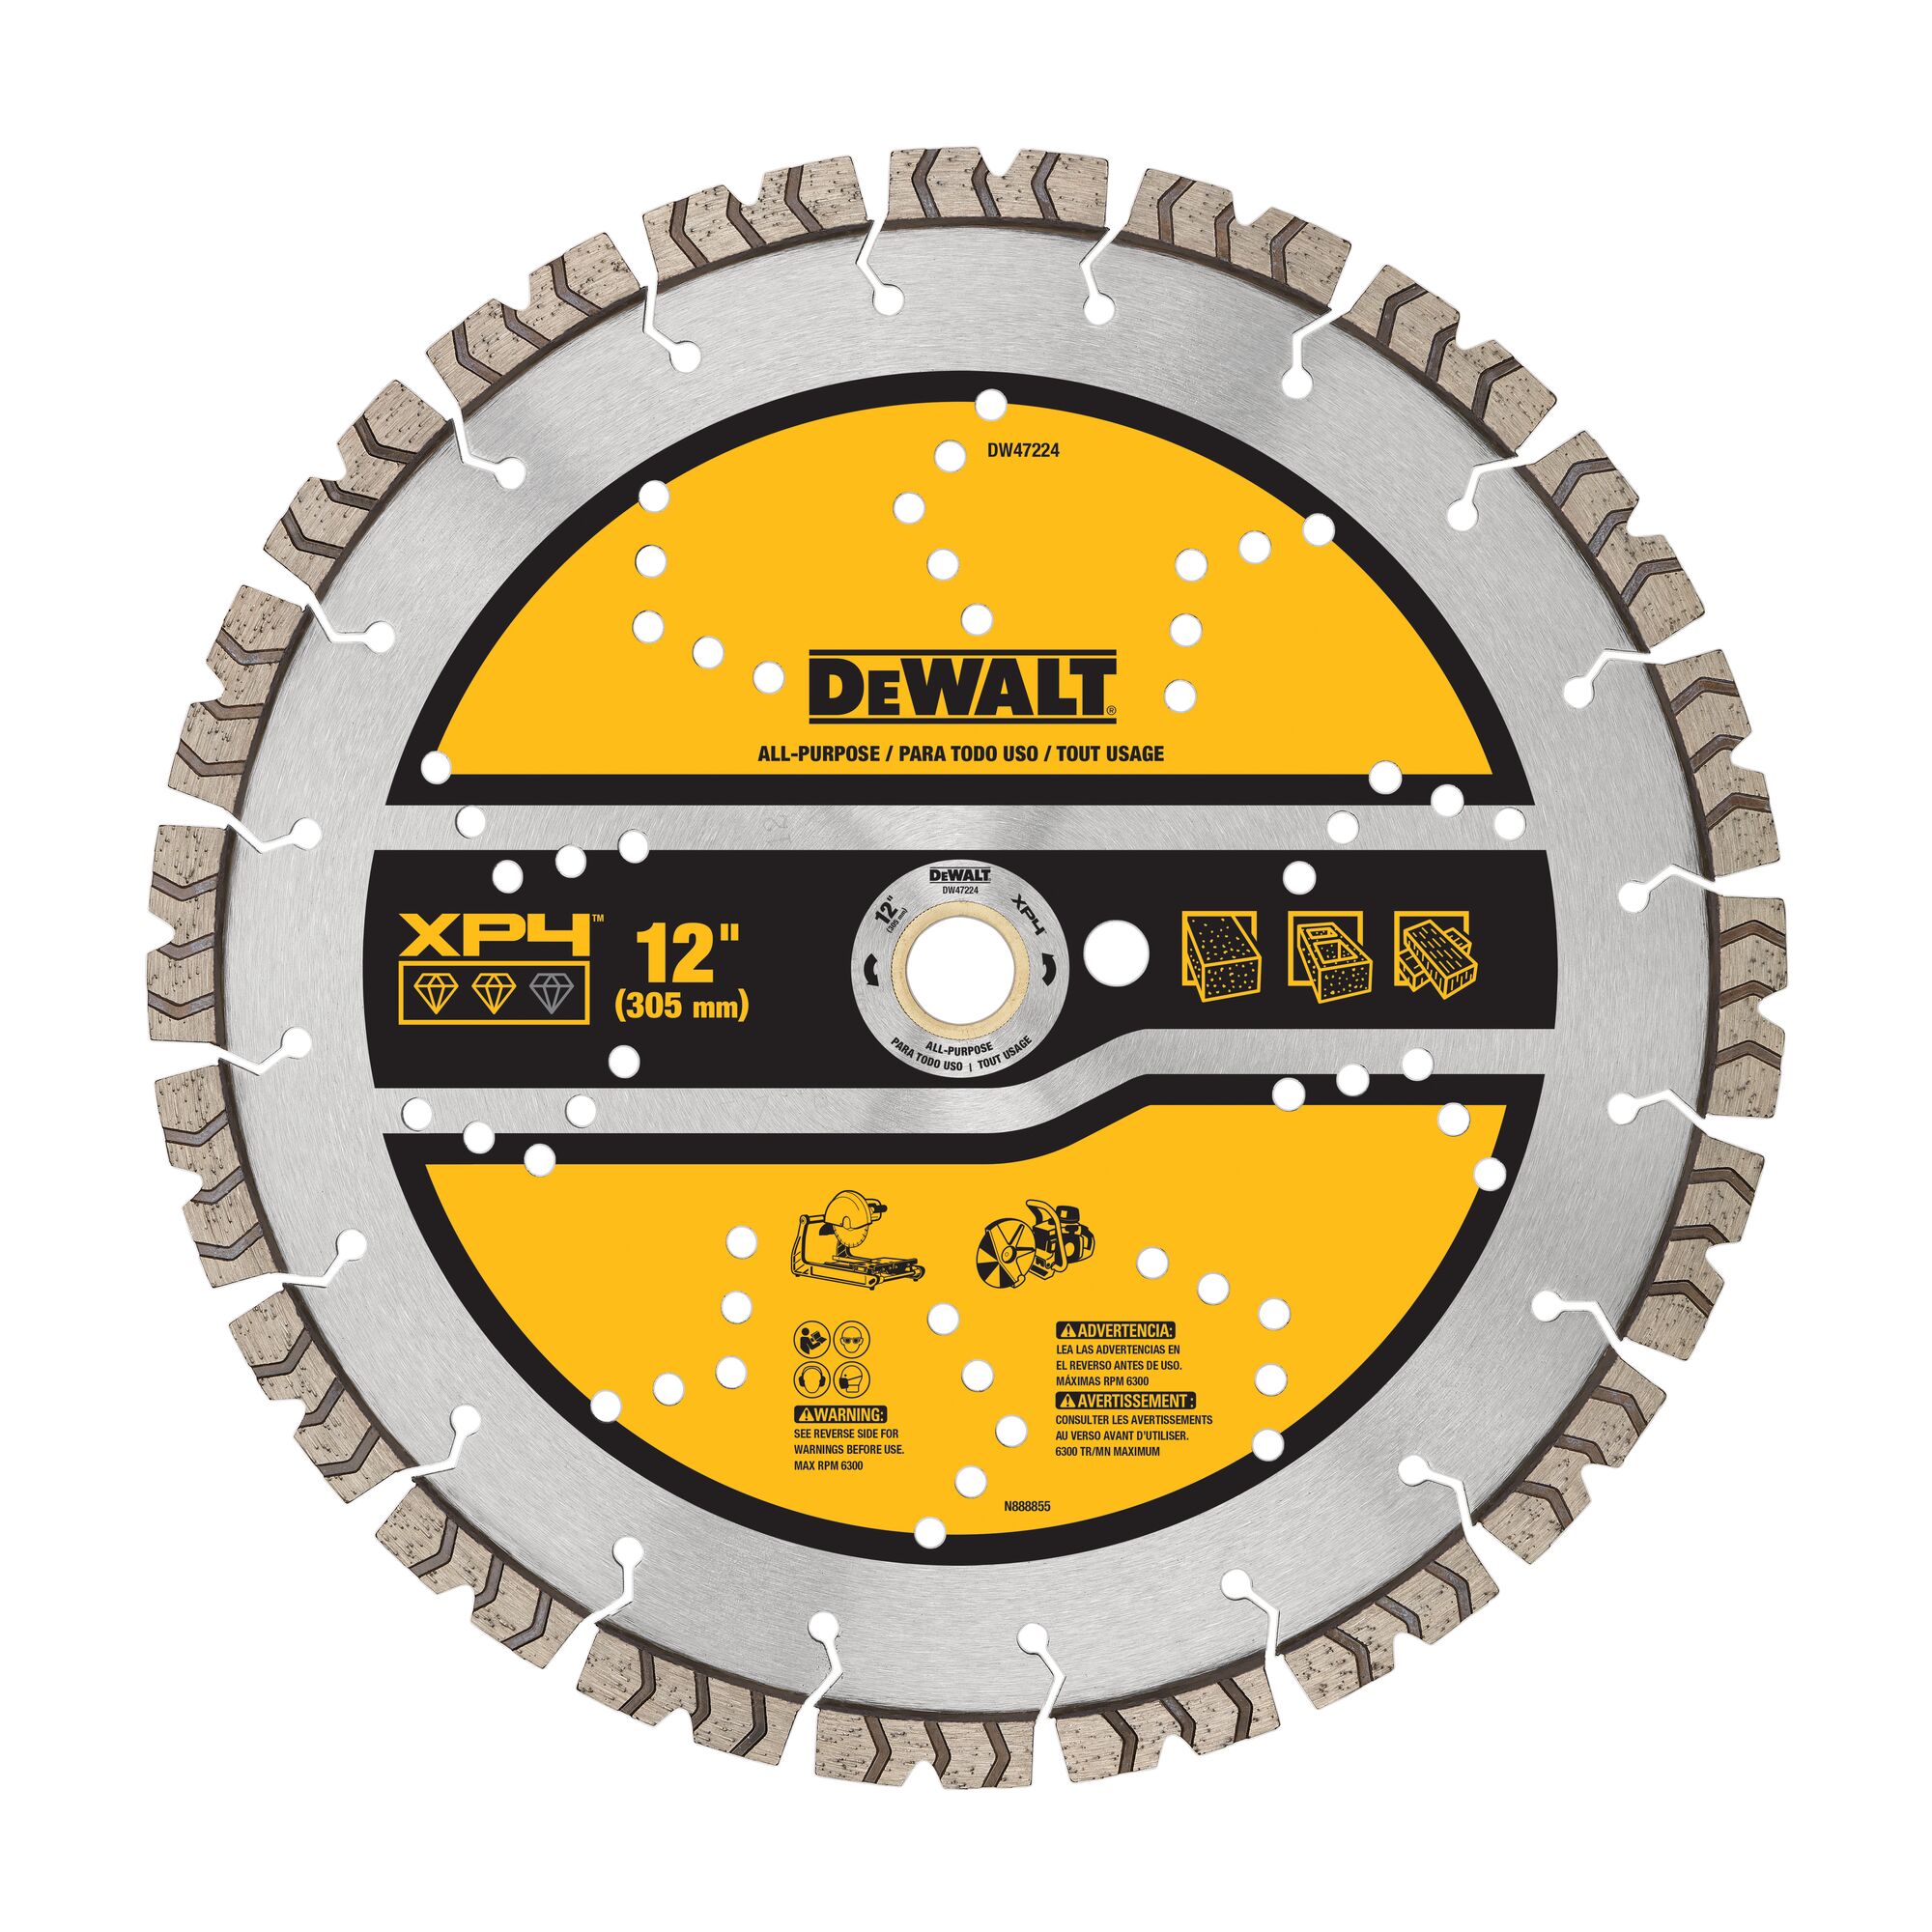 DEWALT DW4714 Industrial 7-Inch Segmented Diamond Saw Blade 5/8" 